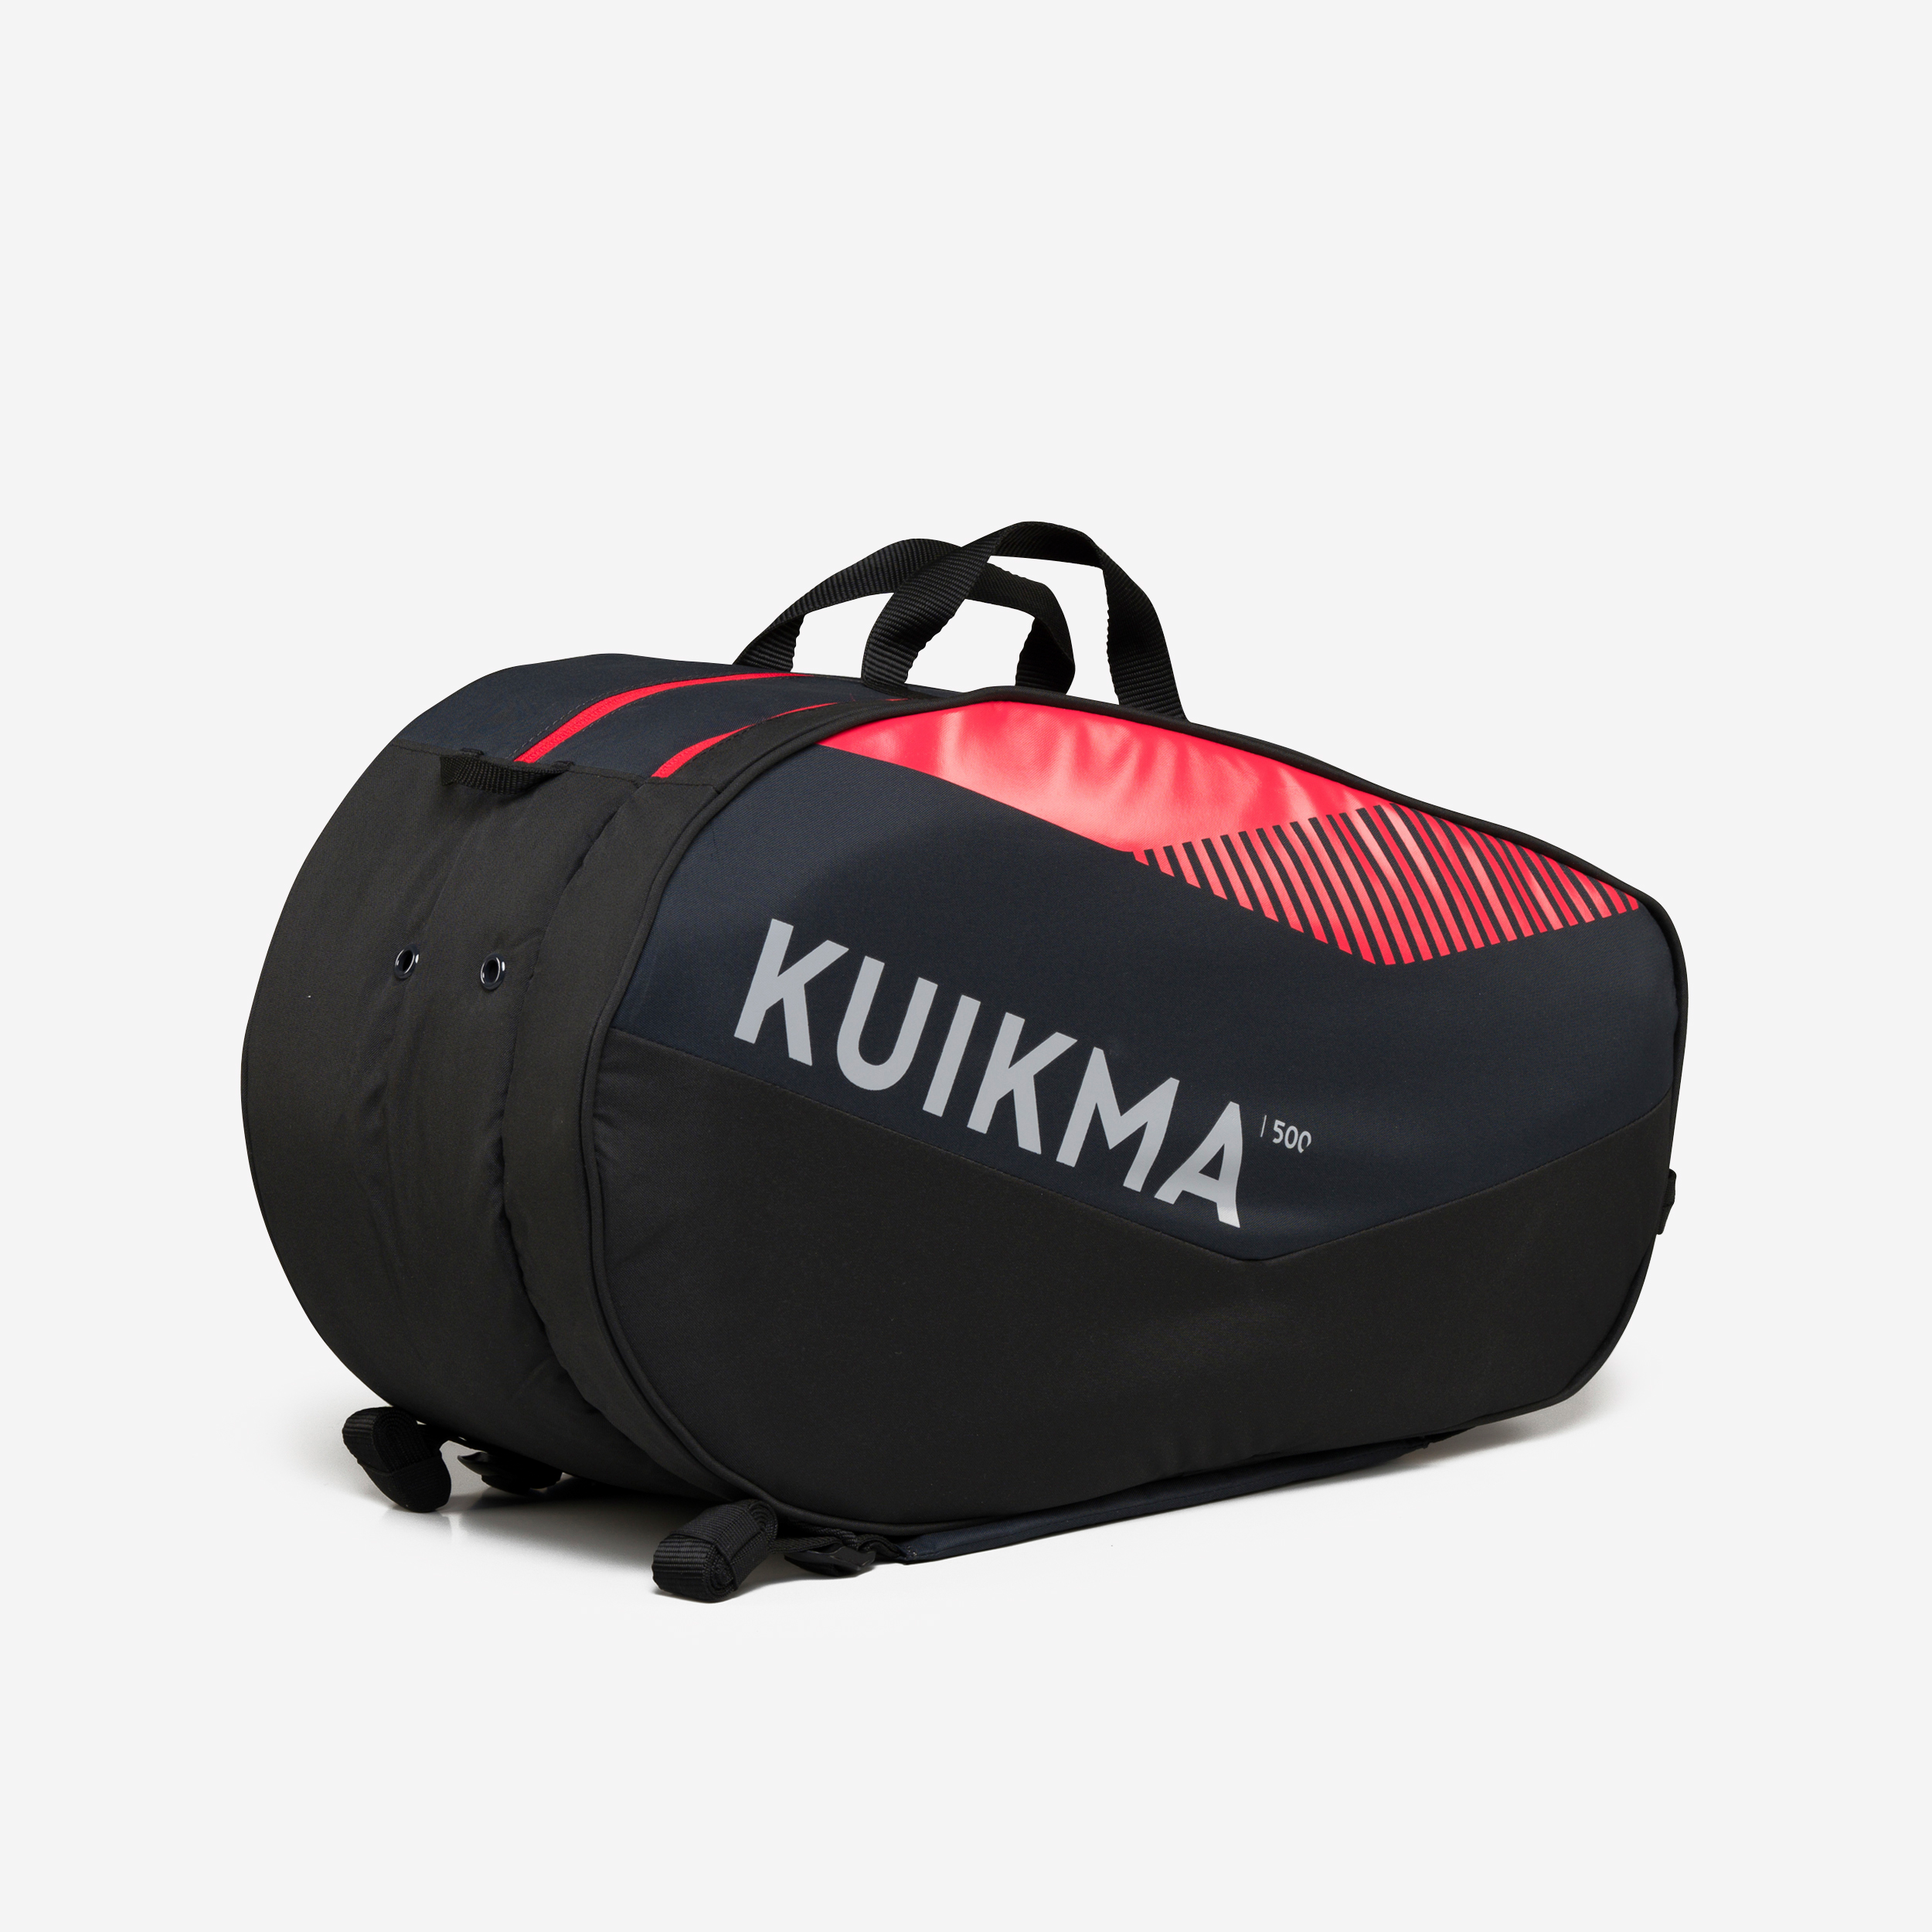 Sac de padel 20L - Kuikma PL 500 noir/rouge pour les clubs et